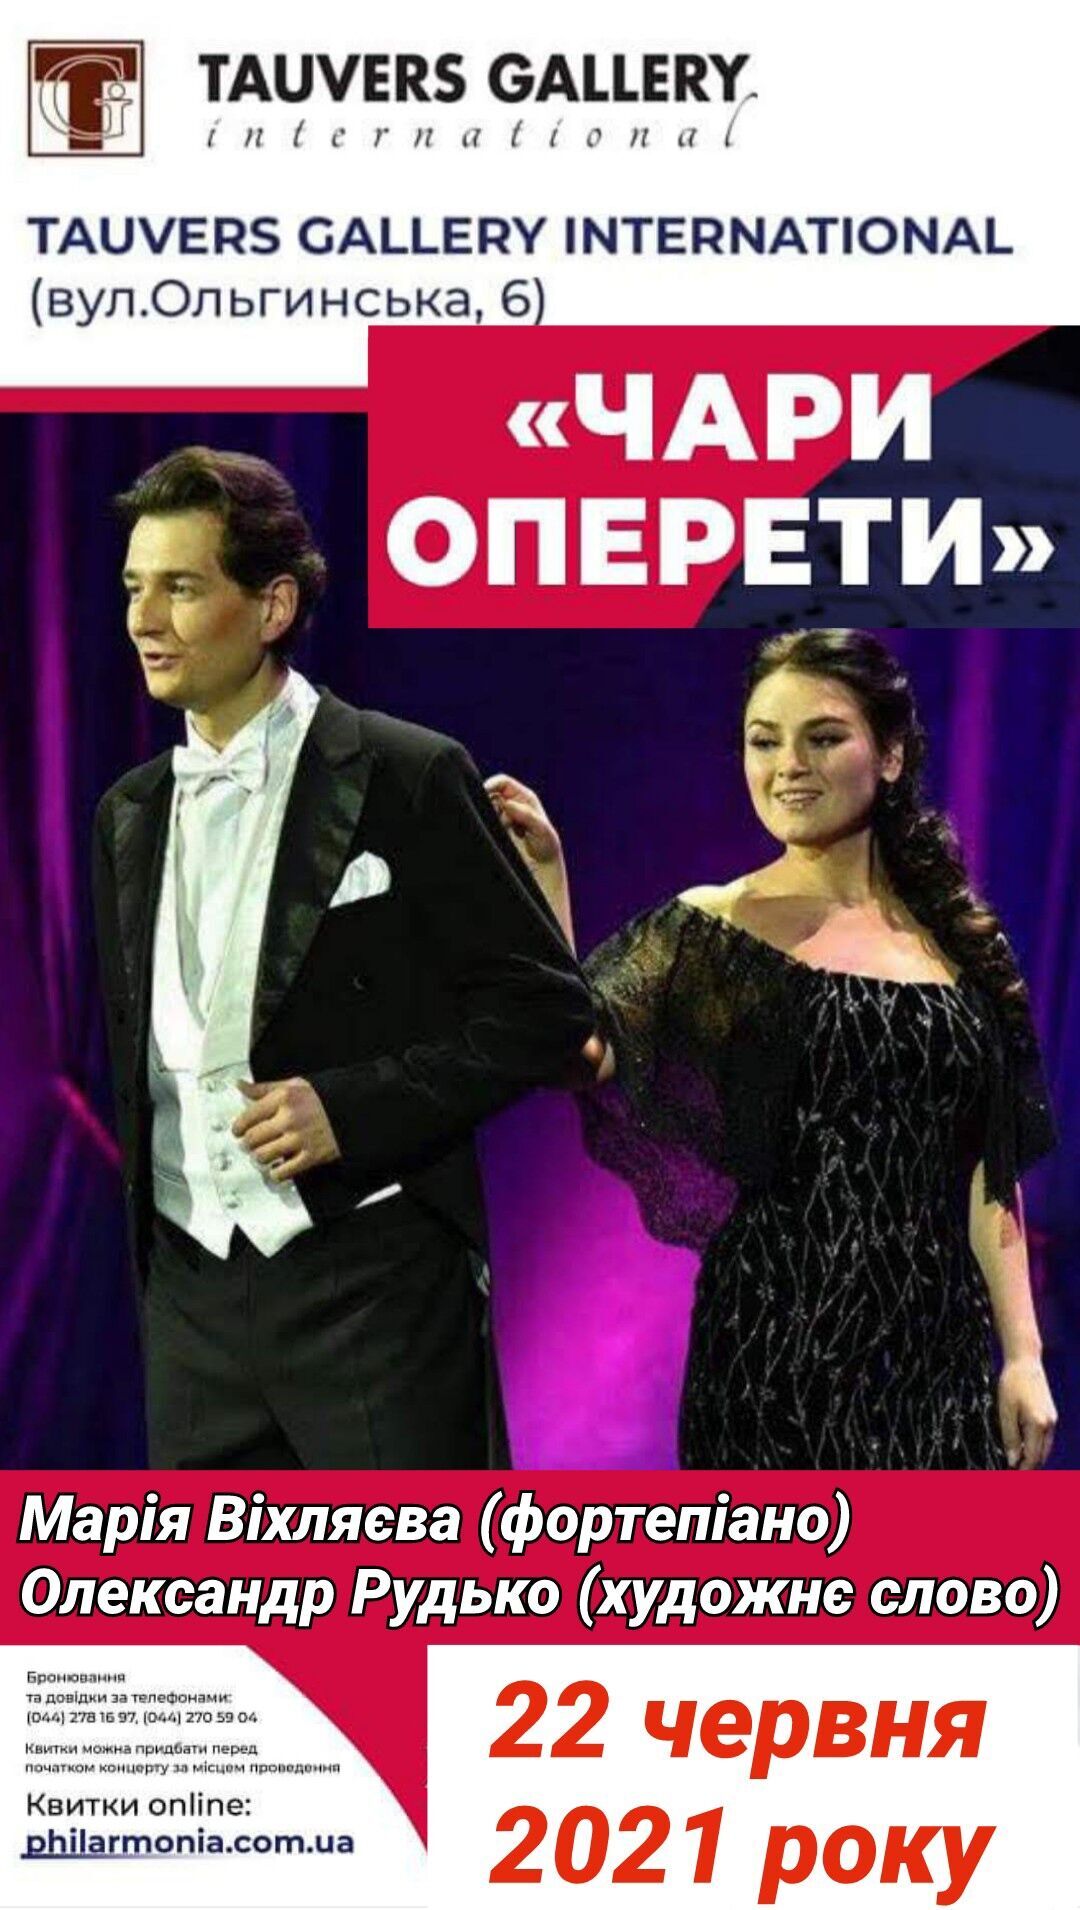 22 июня состоится последний в этом сезоне концерт "Волшебство оперетты"